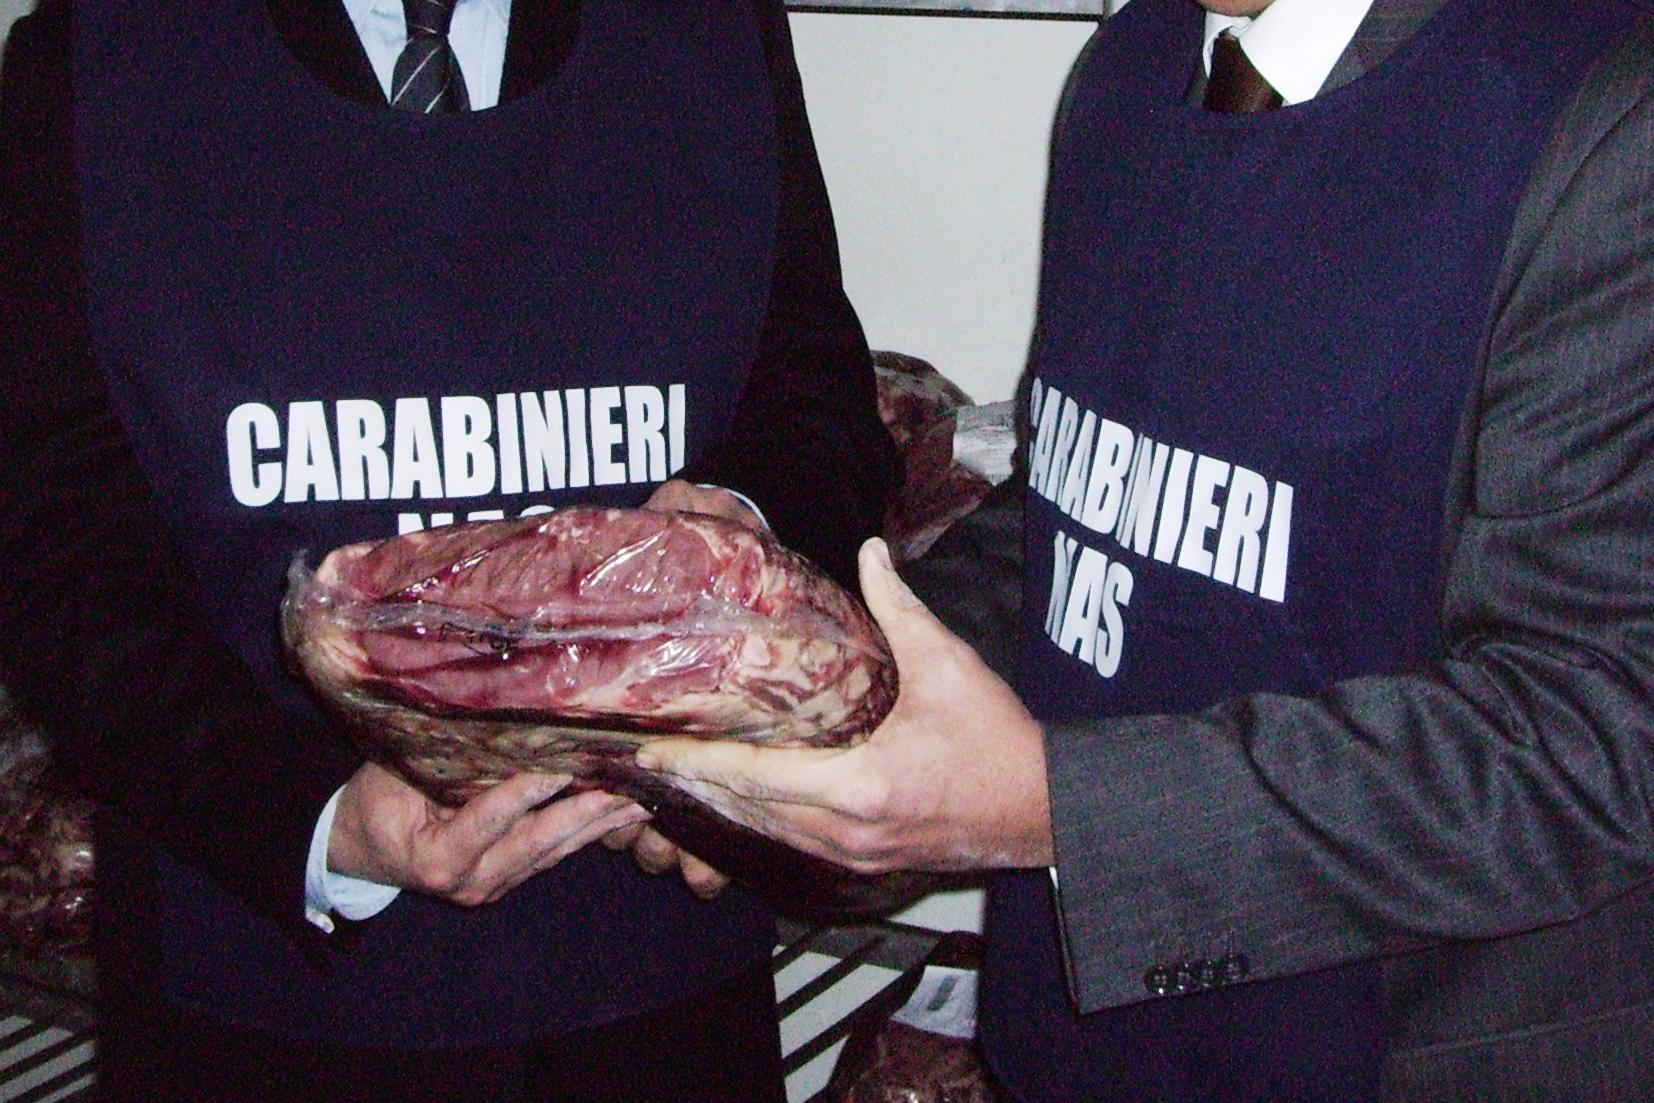 Un deposito di alimenti abusivo accanto al ristorante: la scoperta a Cagliari (foto Carabinieri)